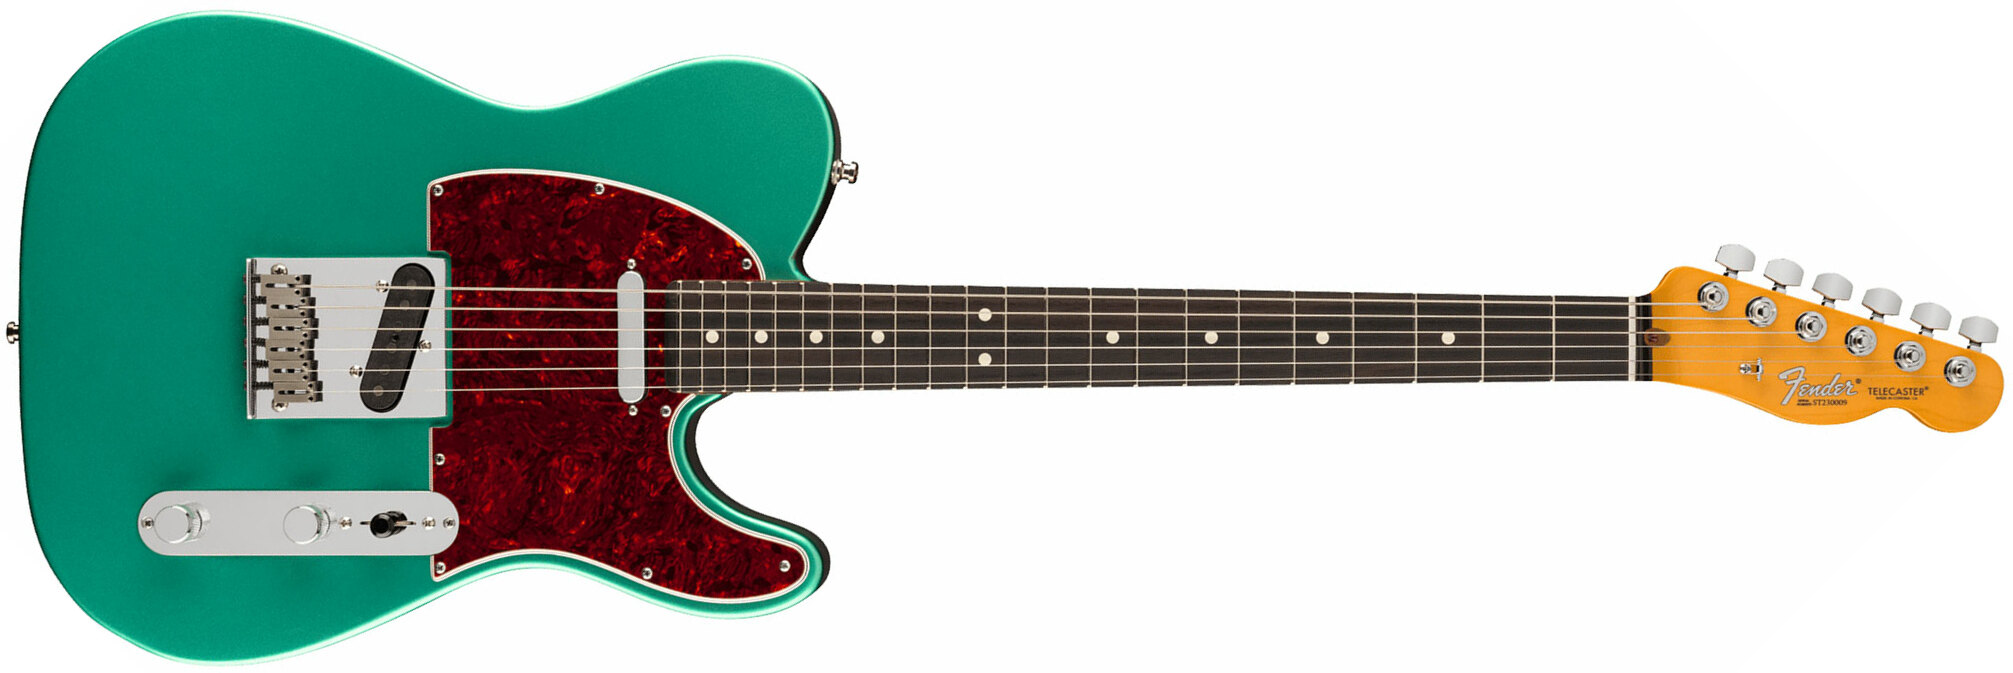 Fender Susan Tedeschi Tele Usa Signature 2s Ht Rw - Aged Caribbean Mist - Guitare Électrique Forme Tel - Main picture